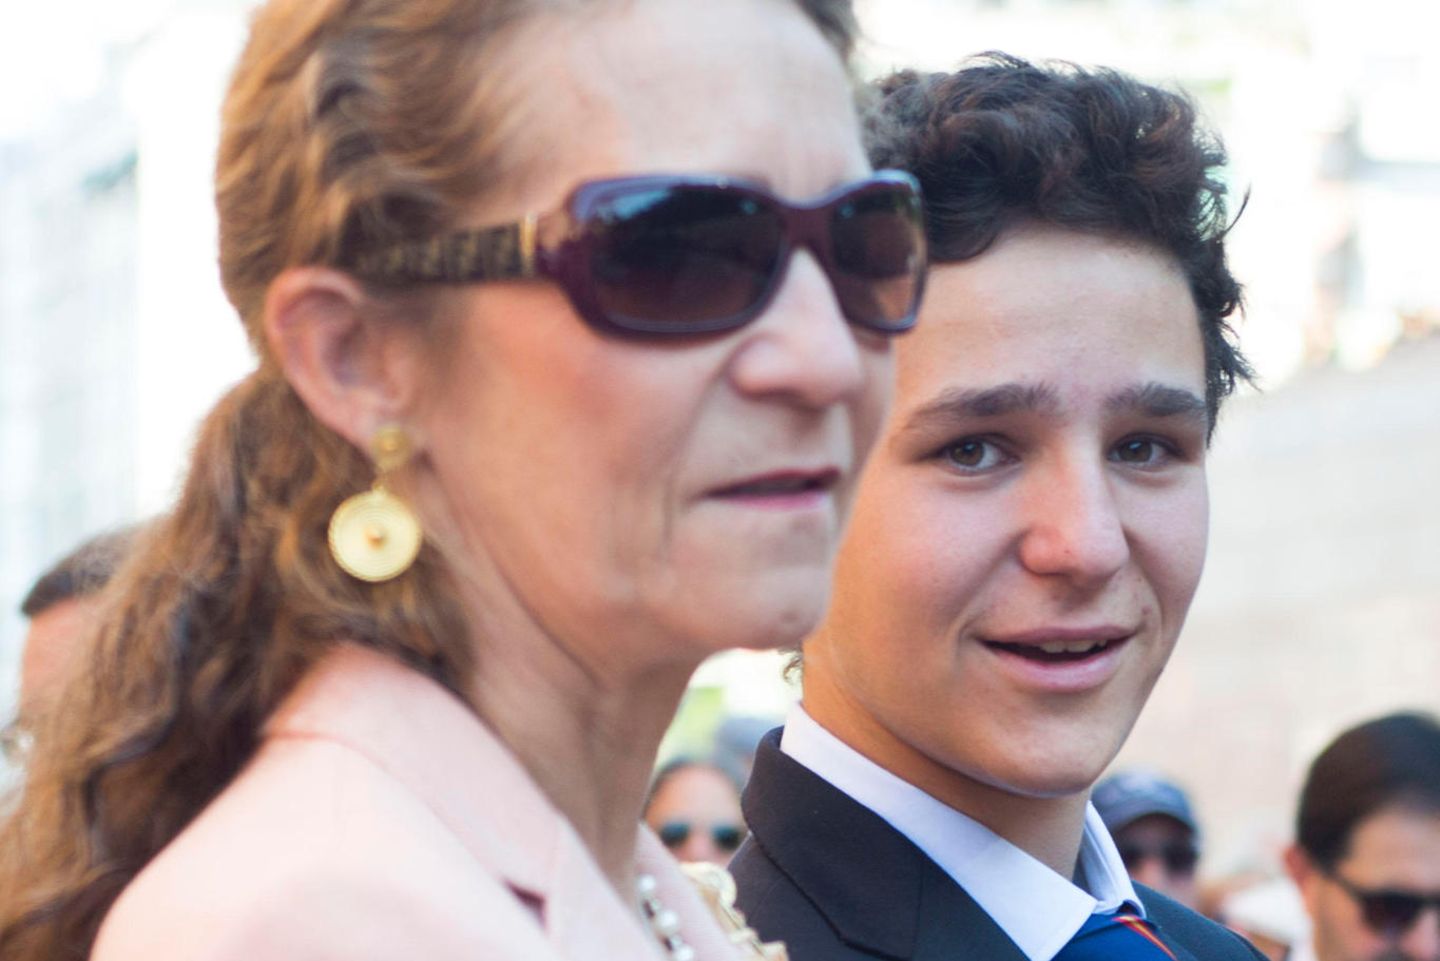 Prinzessin Elena und ihr Sohn, Juan Felipe de Marichalar, besuchen im Juni 2016 gemeinsam einen Stierkampf. Der Lockenkopf hat sich zu einem attraktiven jungen Mann entwickelt.